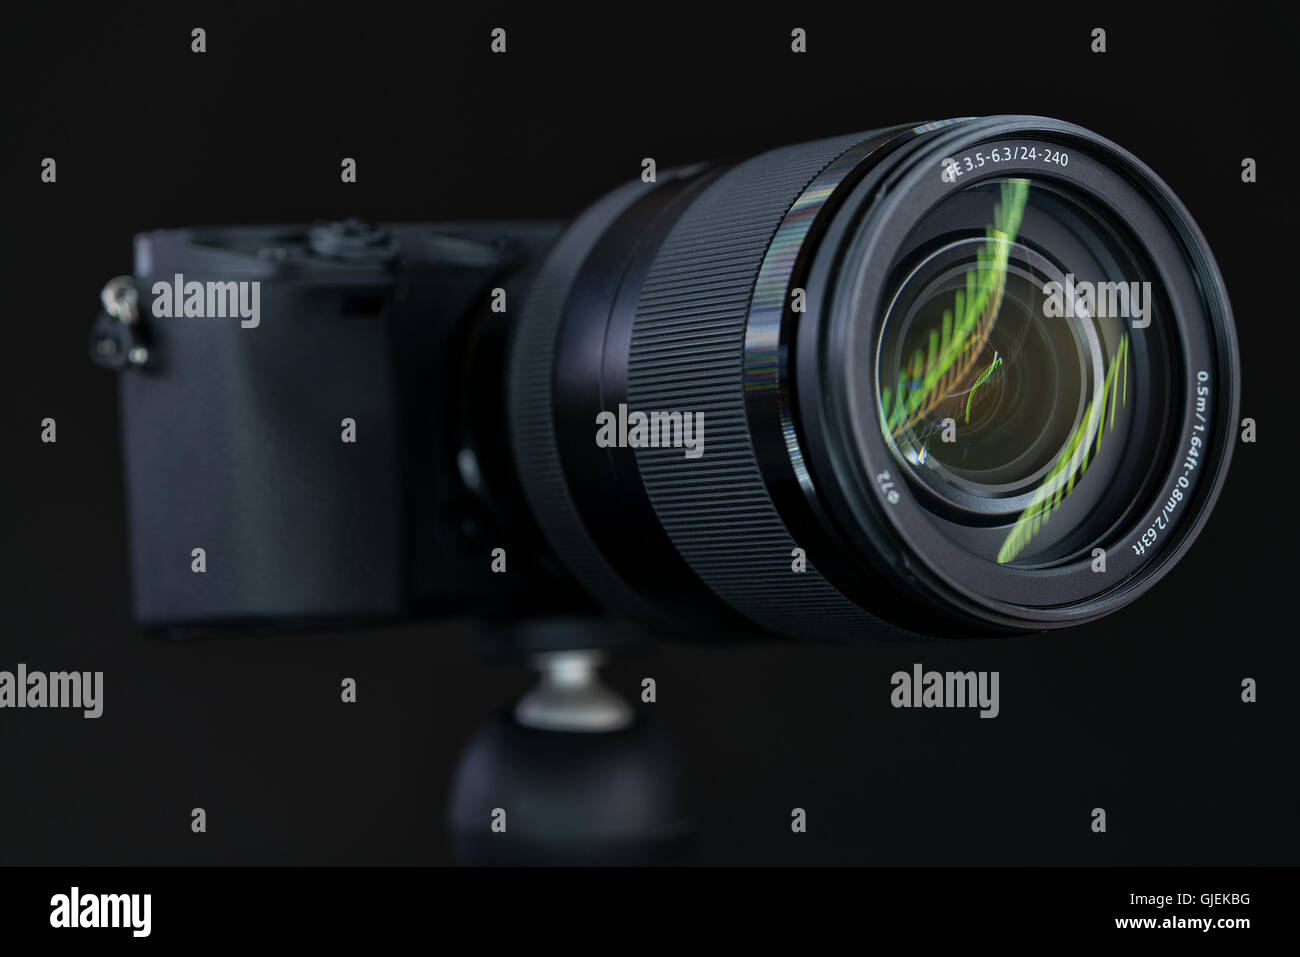 Spiegellose schnelle Fokussierung und 4K-shooting Digitalkamera mit  24-240mm Reise-Objektiv Stockfotografie - Alamy